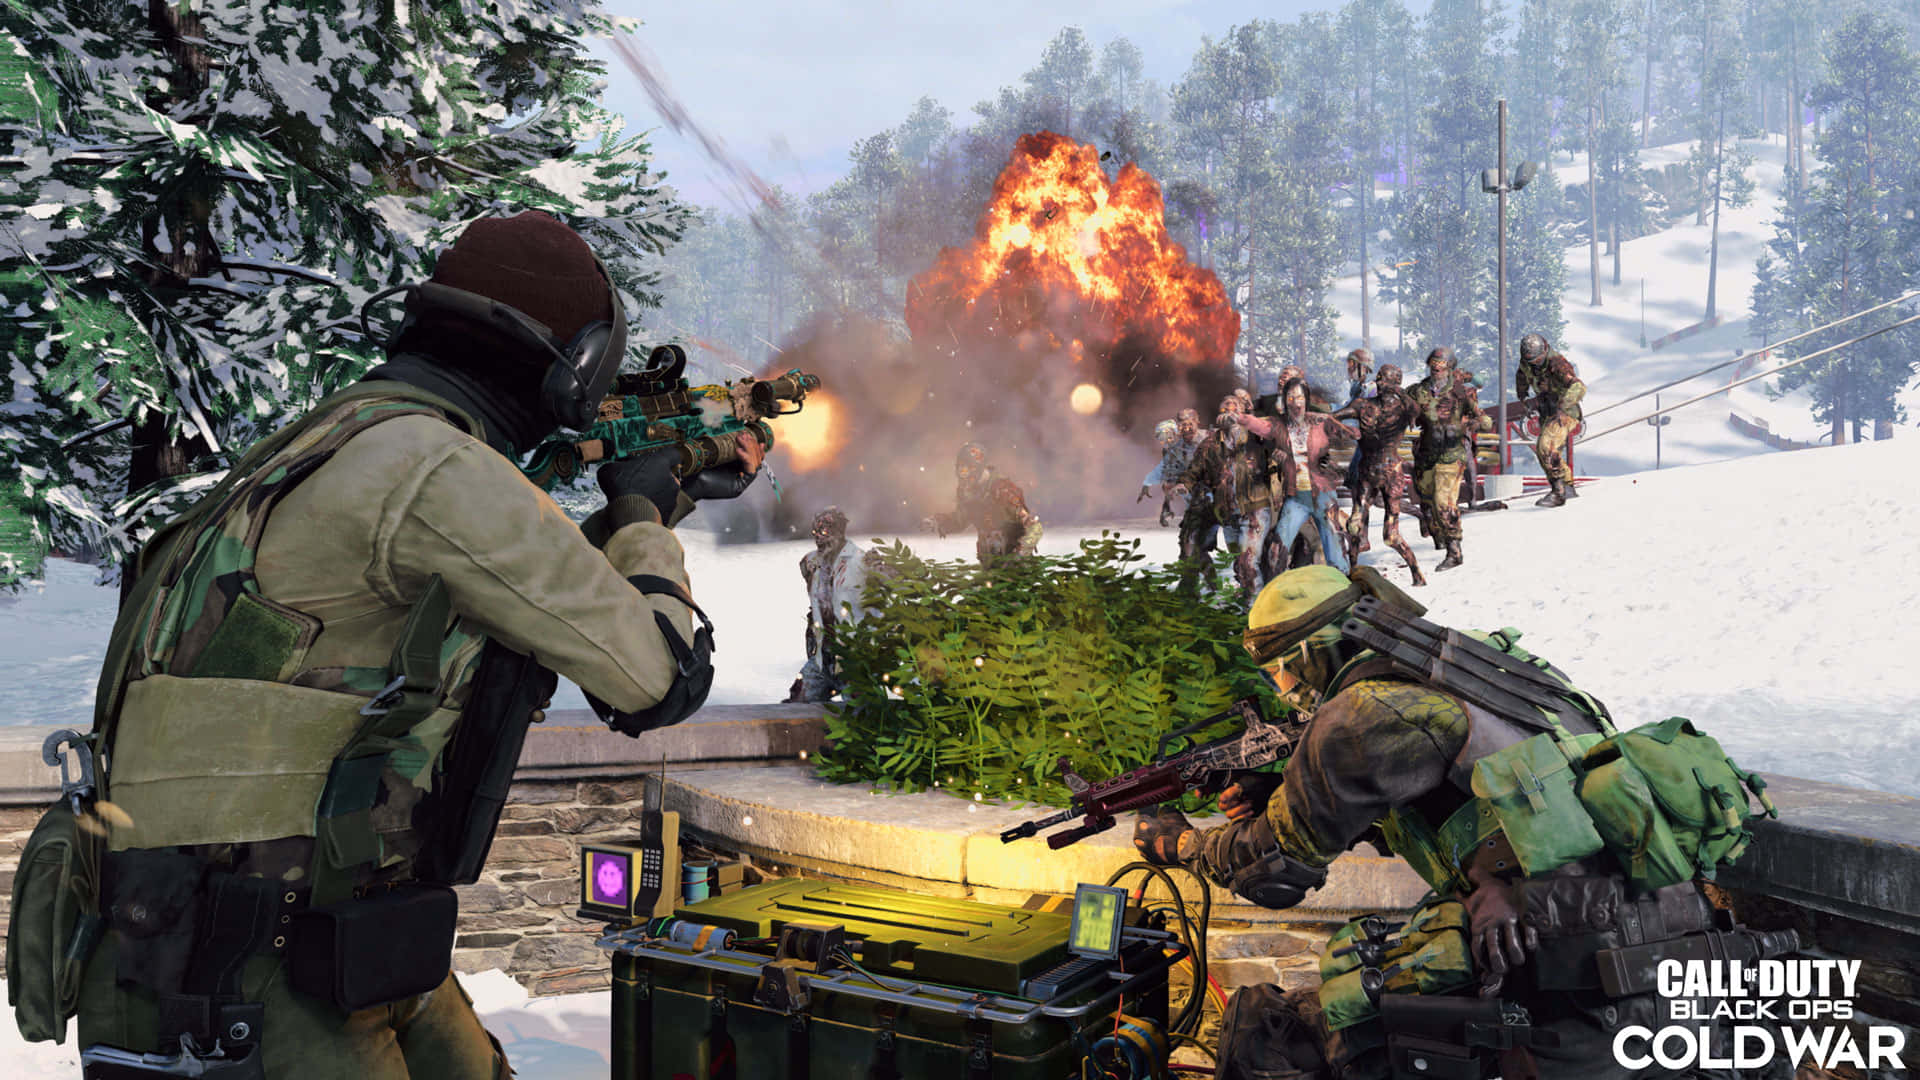 Preparatia Sconfiggere L'opposizione Su Un Nuovo Campo Di Battaglia: Call Of Duty: Black Ops Cold War